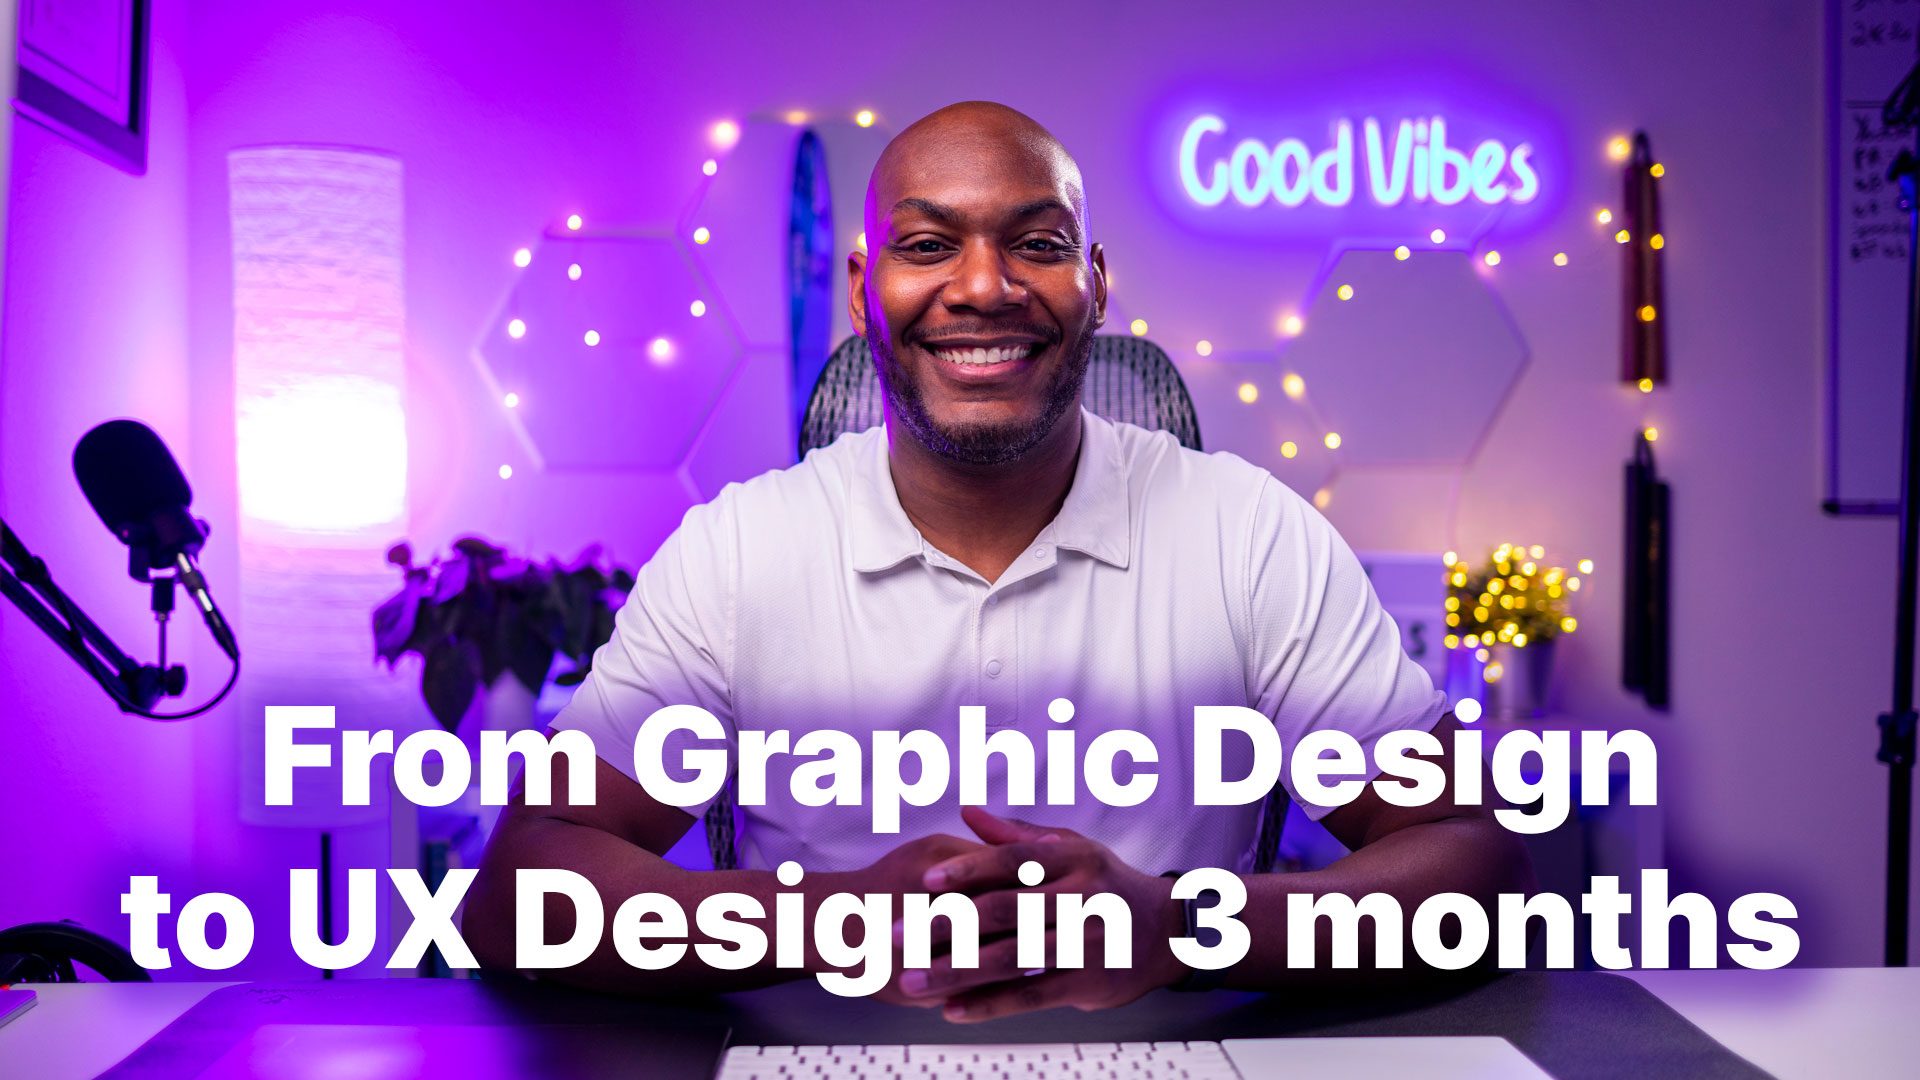 Eric-Abrom-UX-Design-Leader-UX-Design-Graphic-Design-to-UX-Design